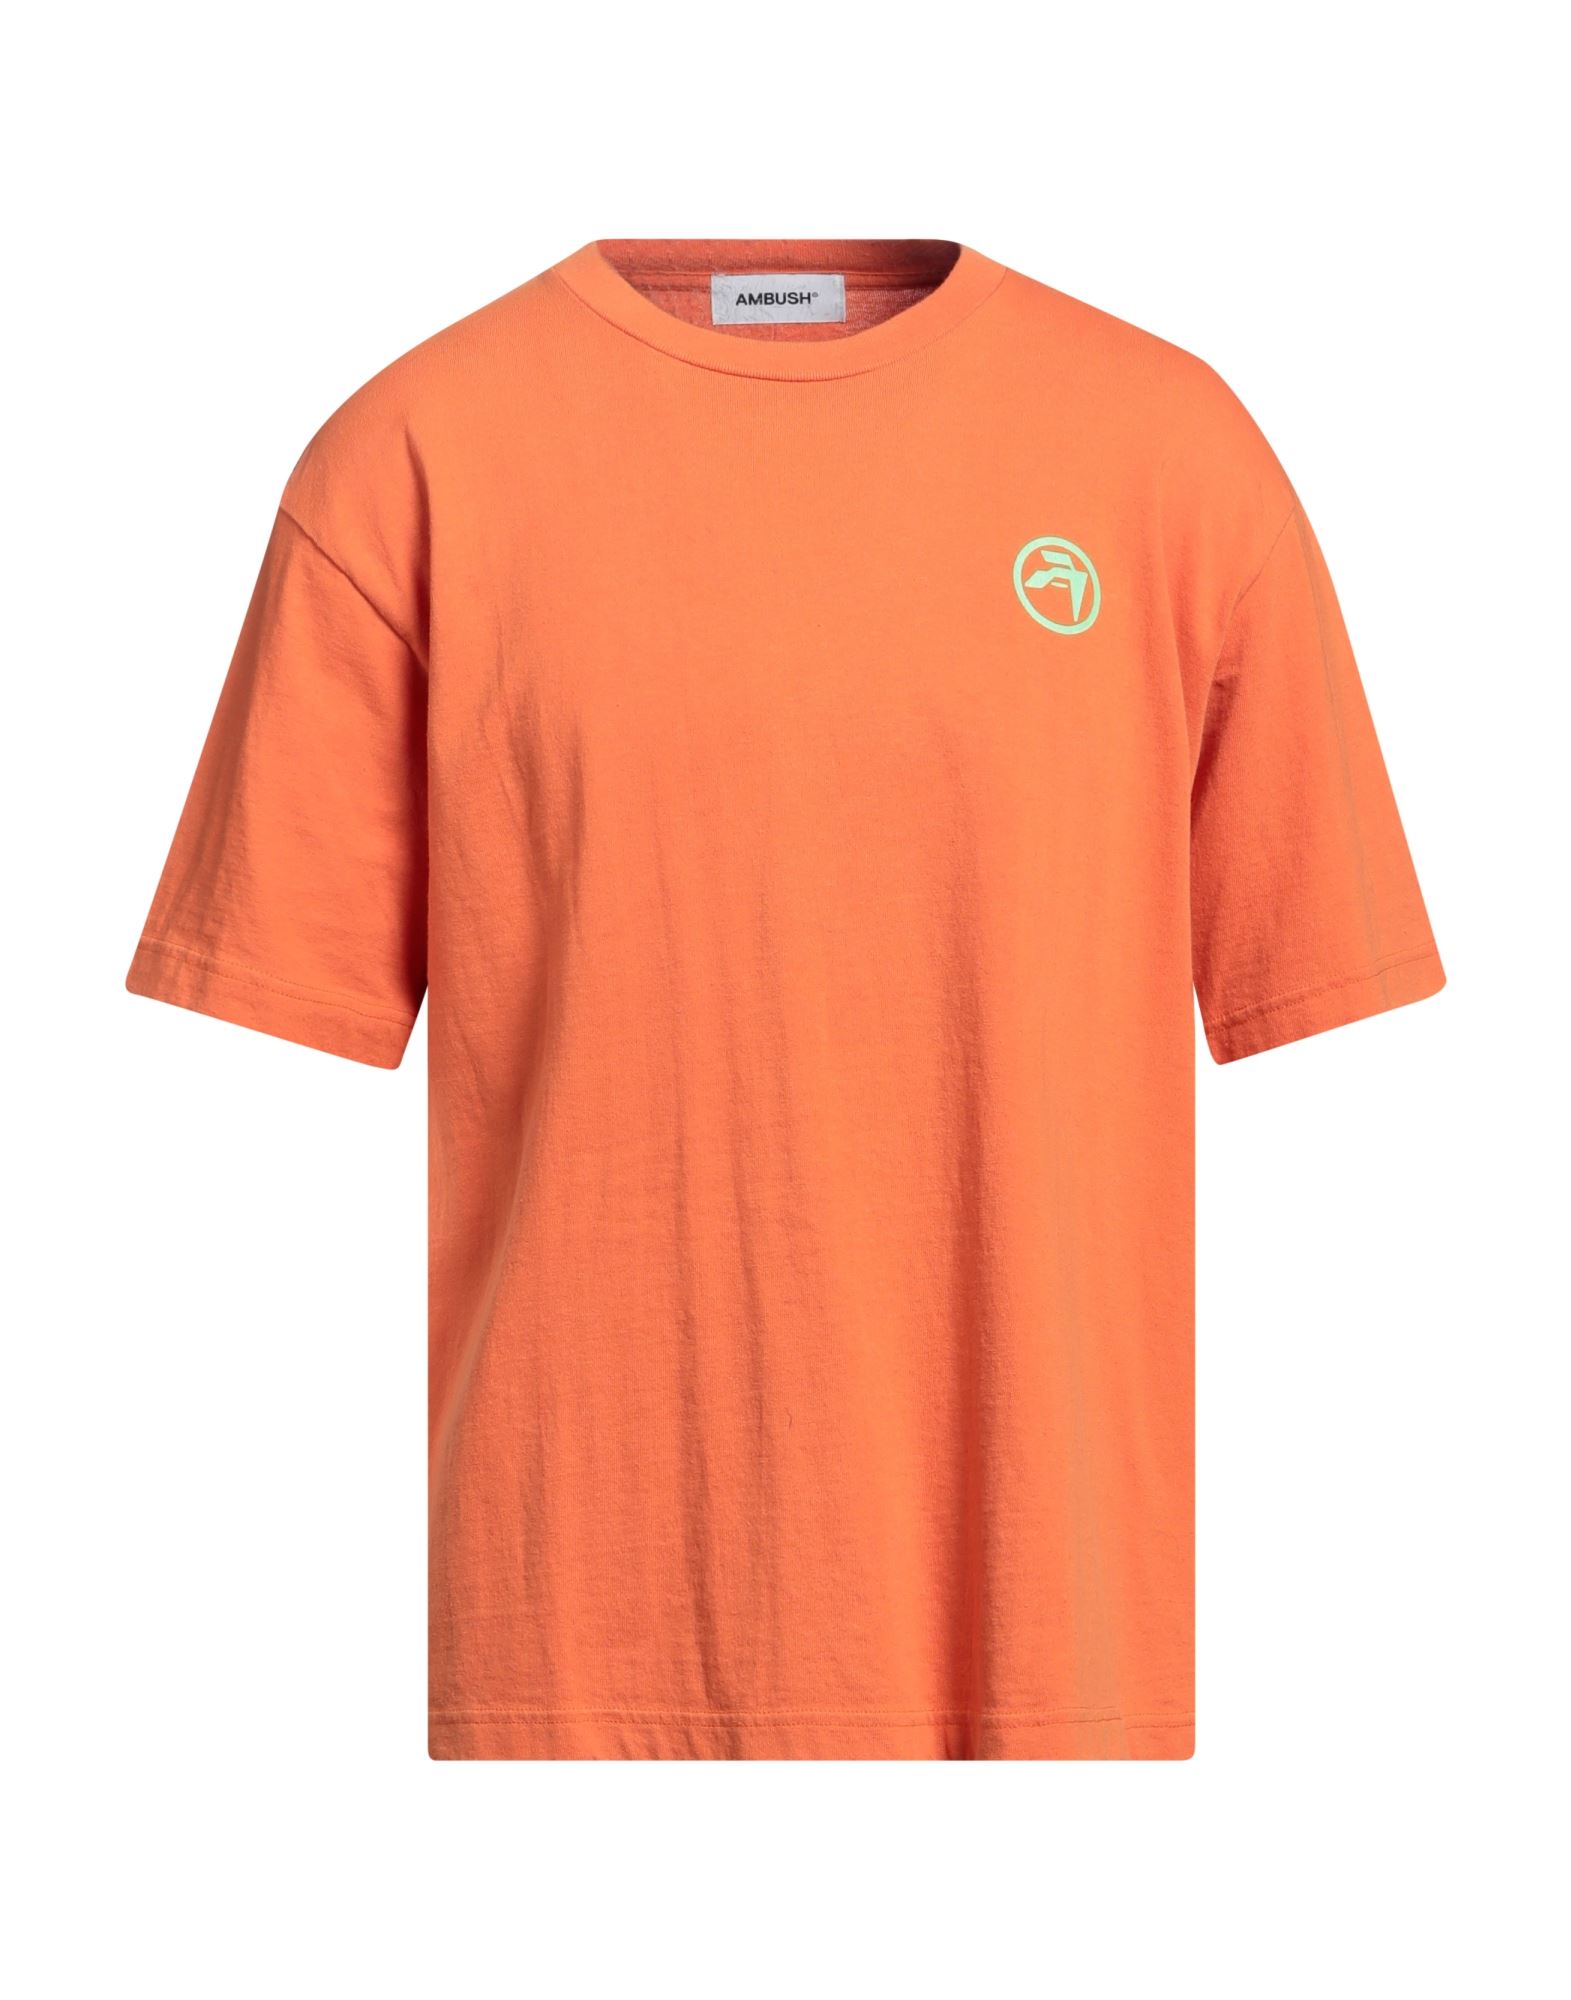 AMBUSH T-shirts Herren Orange von AMBUSH